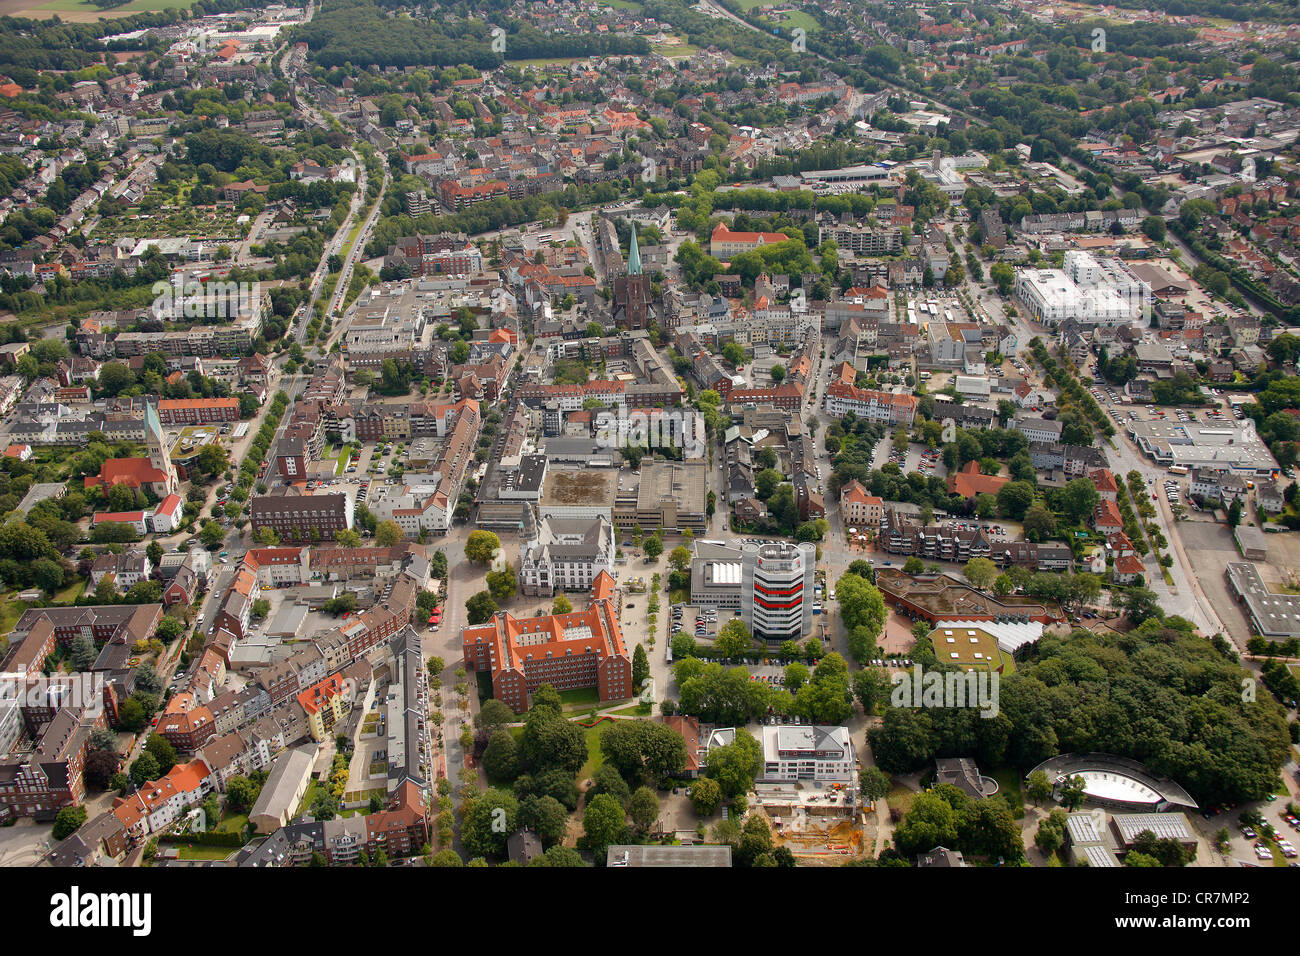 Luftaufnahme, Stadtzentrum mit Rathaus, Gladbeck, Ruhrgebiet, Nordrhein-Westfalen, Deutschland, Europa Stockfoto